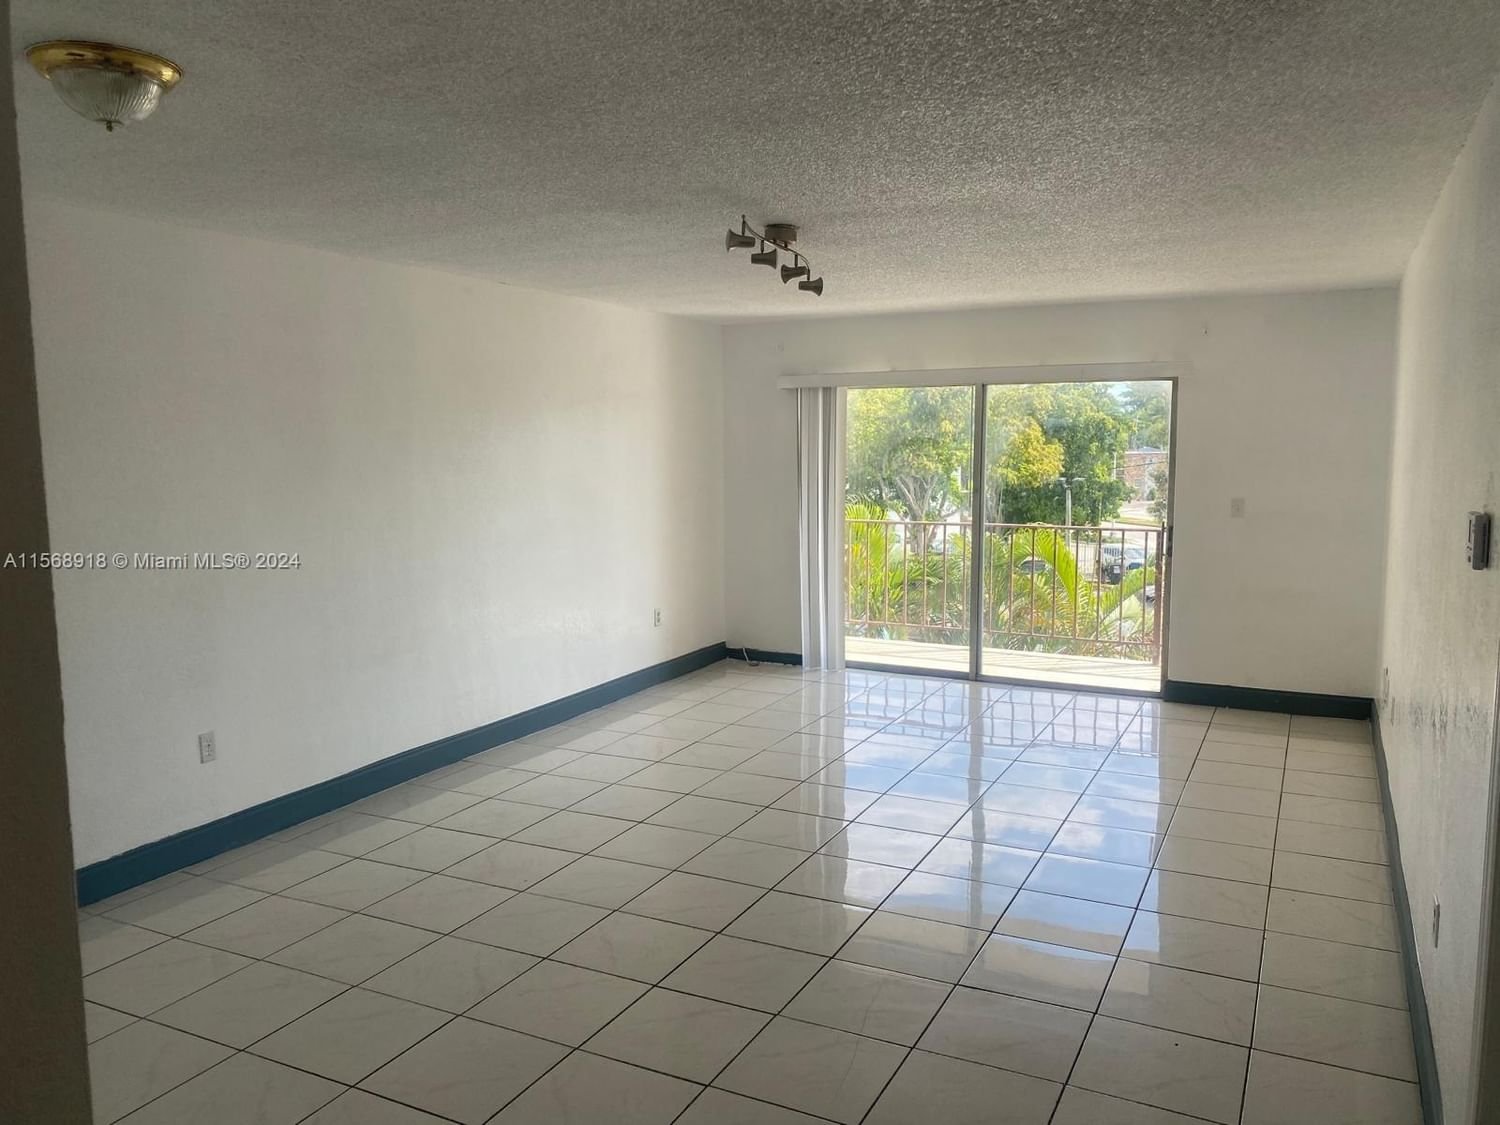 Real estate property located at 11905 2nd Ave C311, Miami-Dade County, CAPRI GARDENS CONDO, North Miami, FL